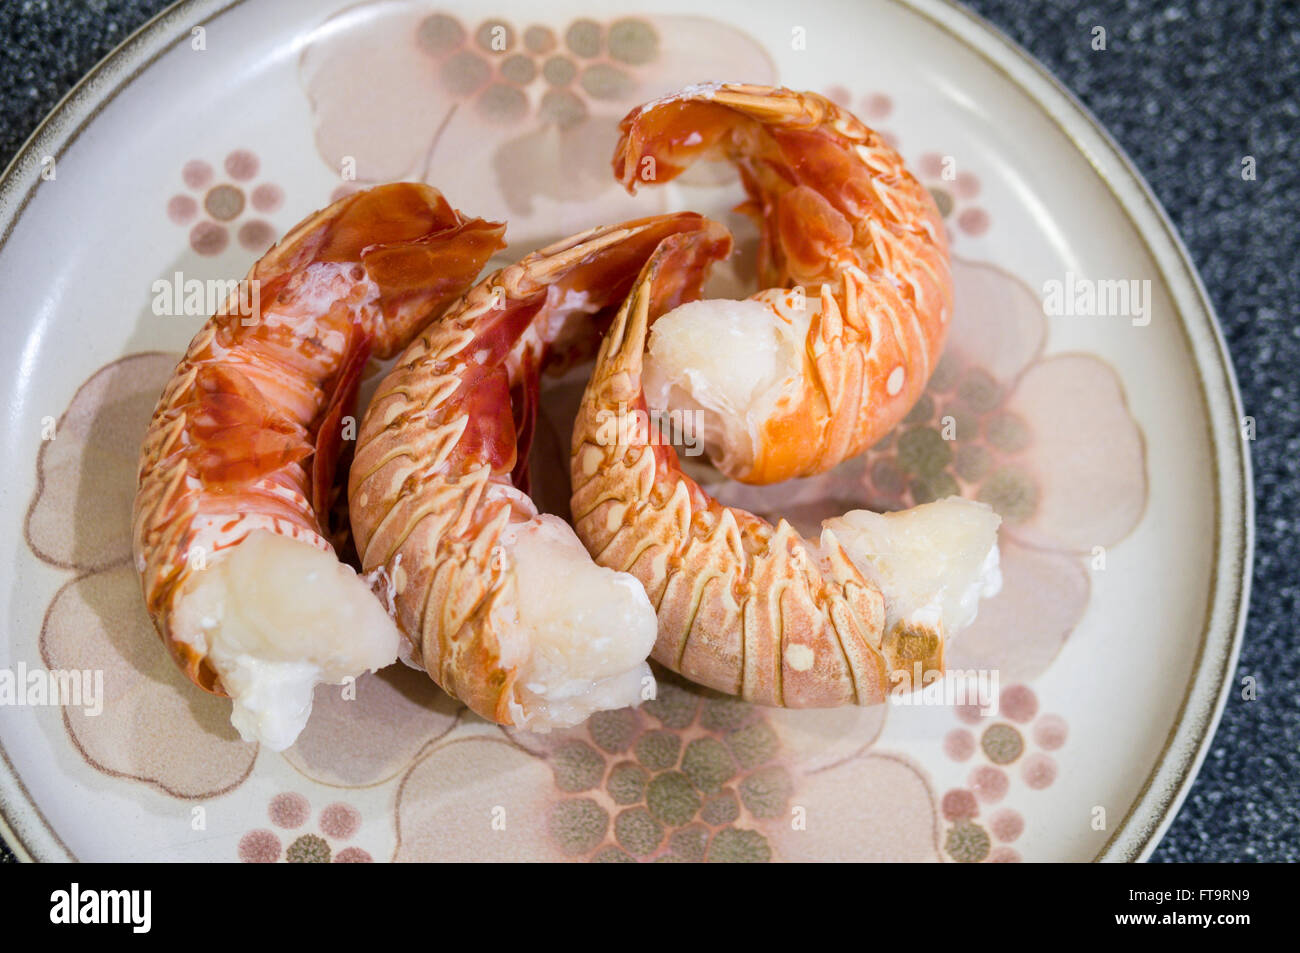 Quatre Queues de homard cuit. 4 queues de homard cuit disposées sur une assiette à dîner. Banque D'Images